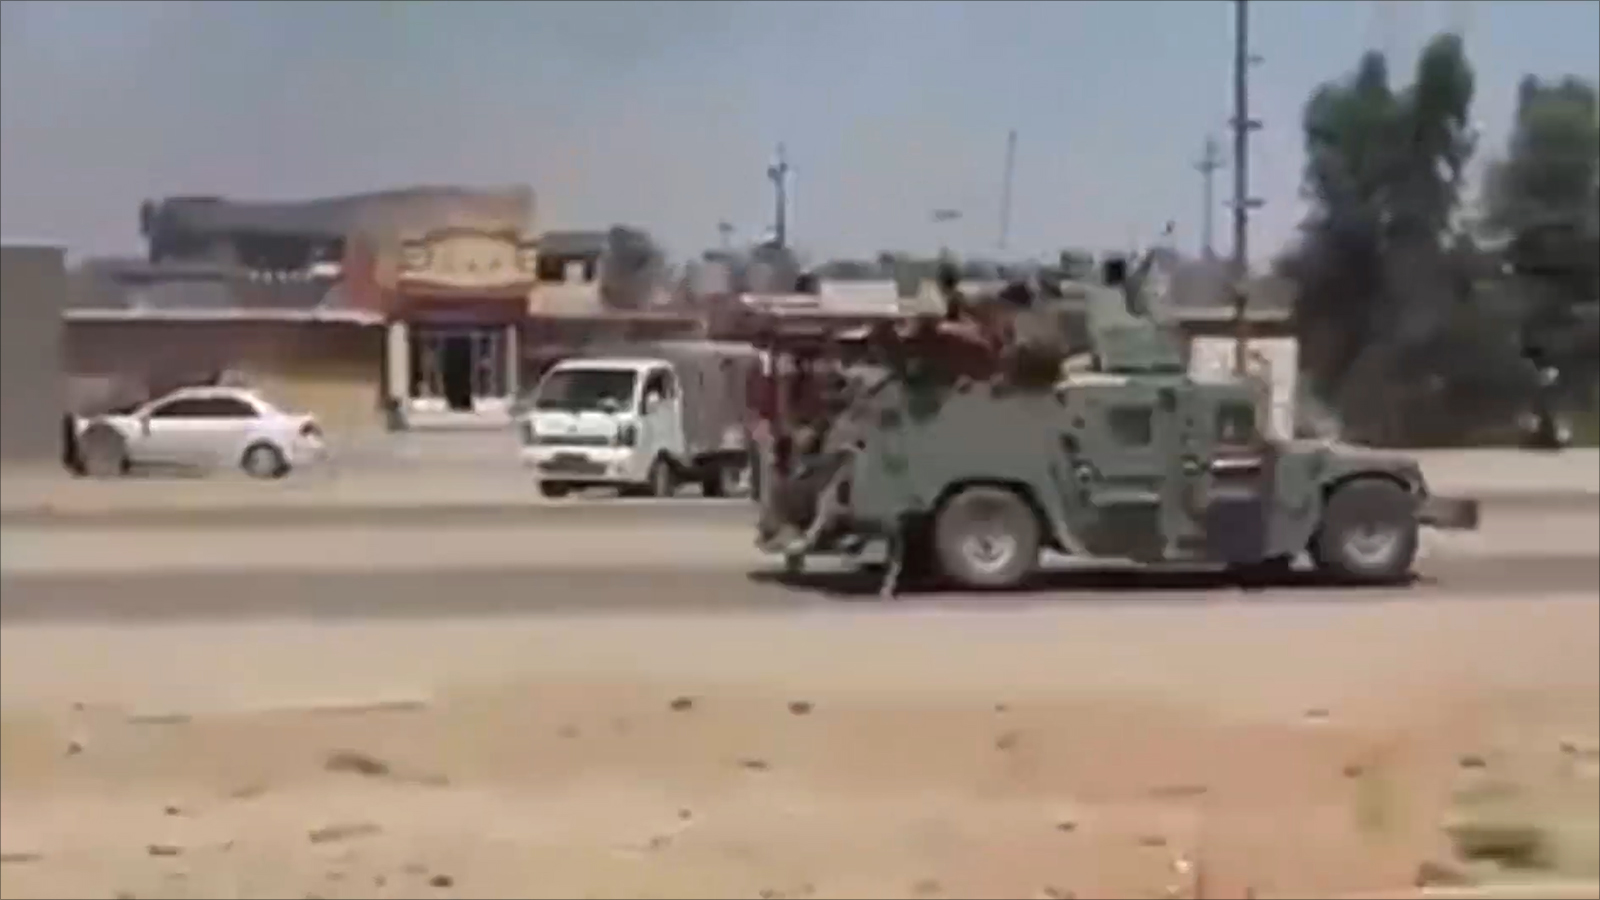 ‪صور بثها ناشطون تظهر هروب الجيش العراقي من مدينة الرمادي‬ صور بثها ناشطون تظهر هروب الجيش العراقي من مدينة الرمادي